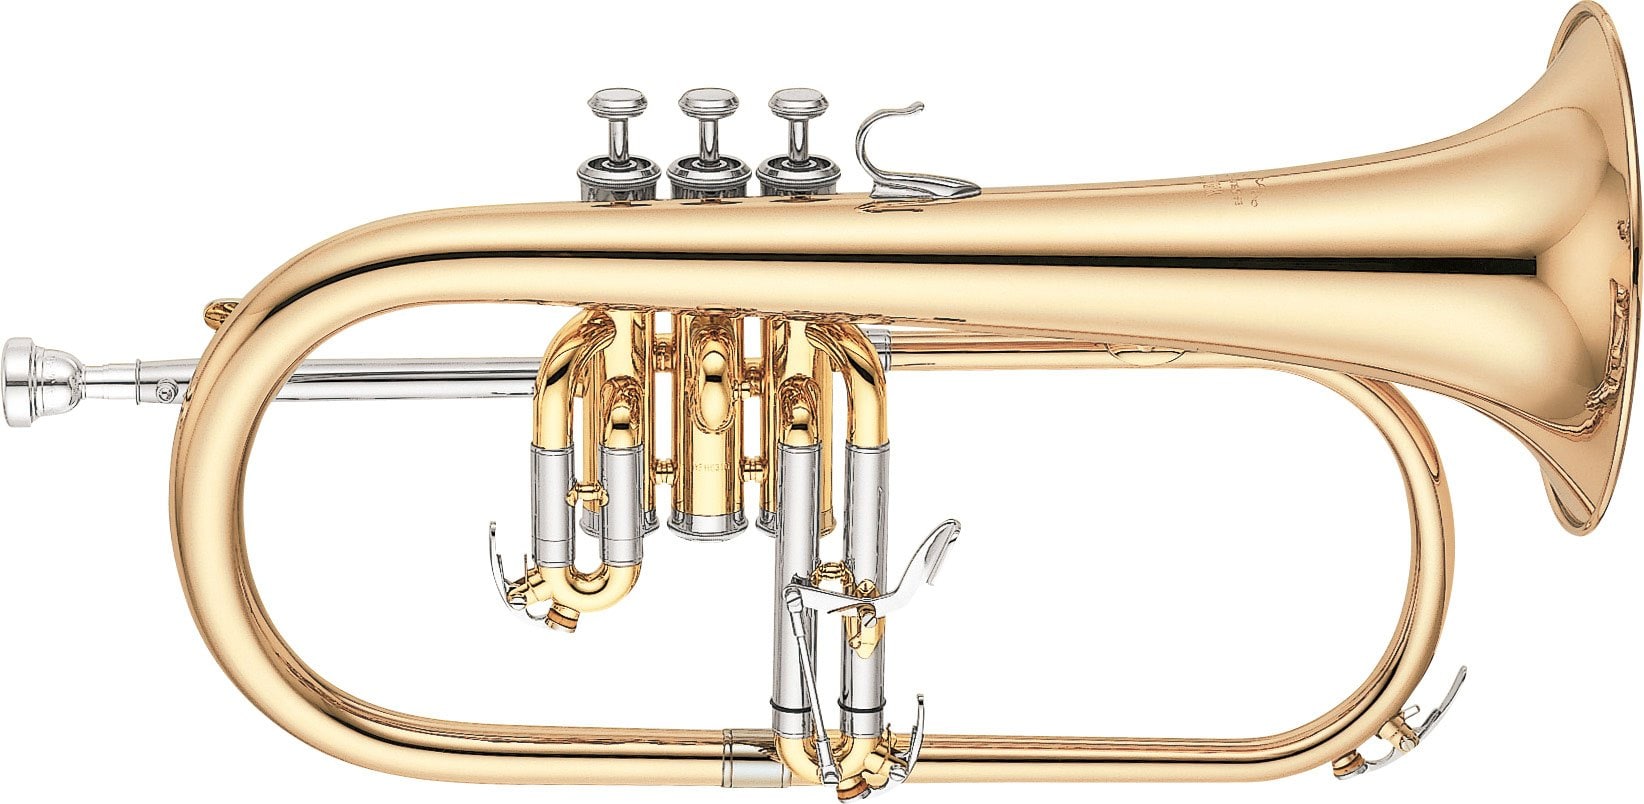 YFH-631G - Overview - Flugelhorns - Brass & Woodwinds - Musical 